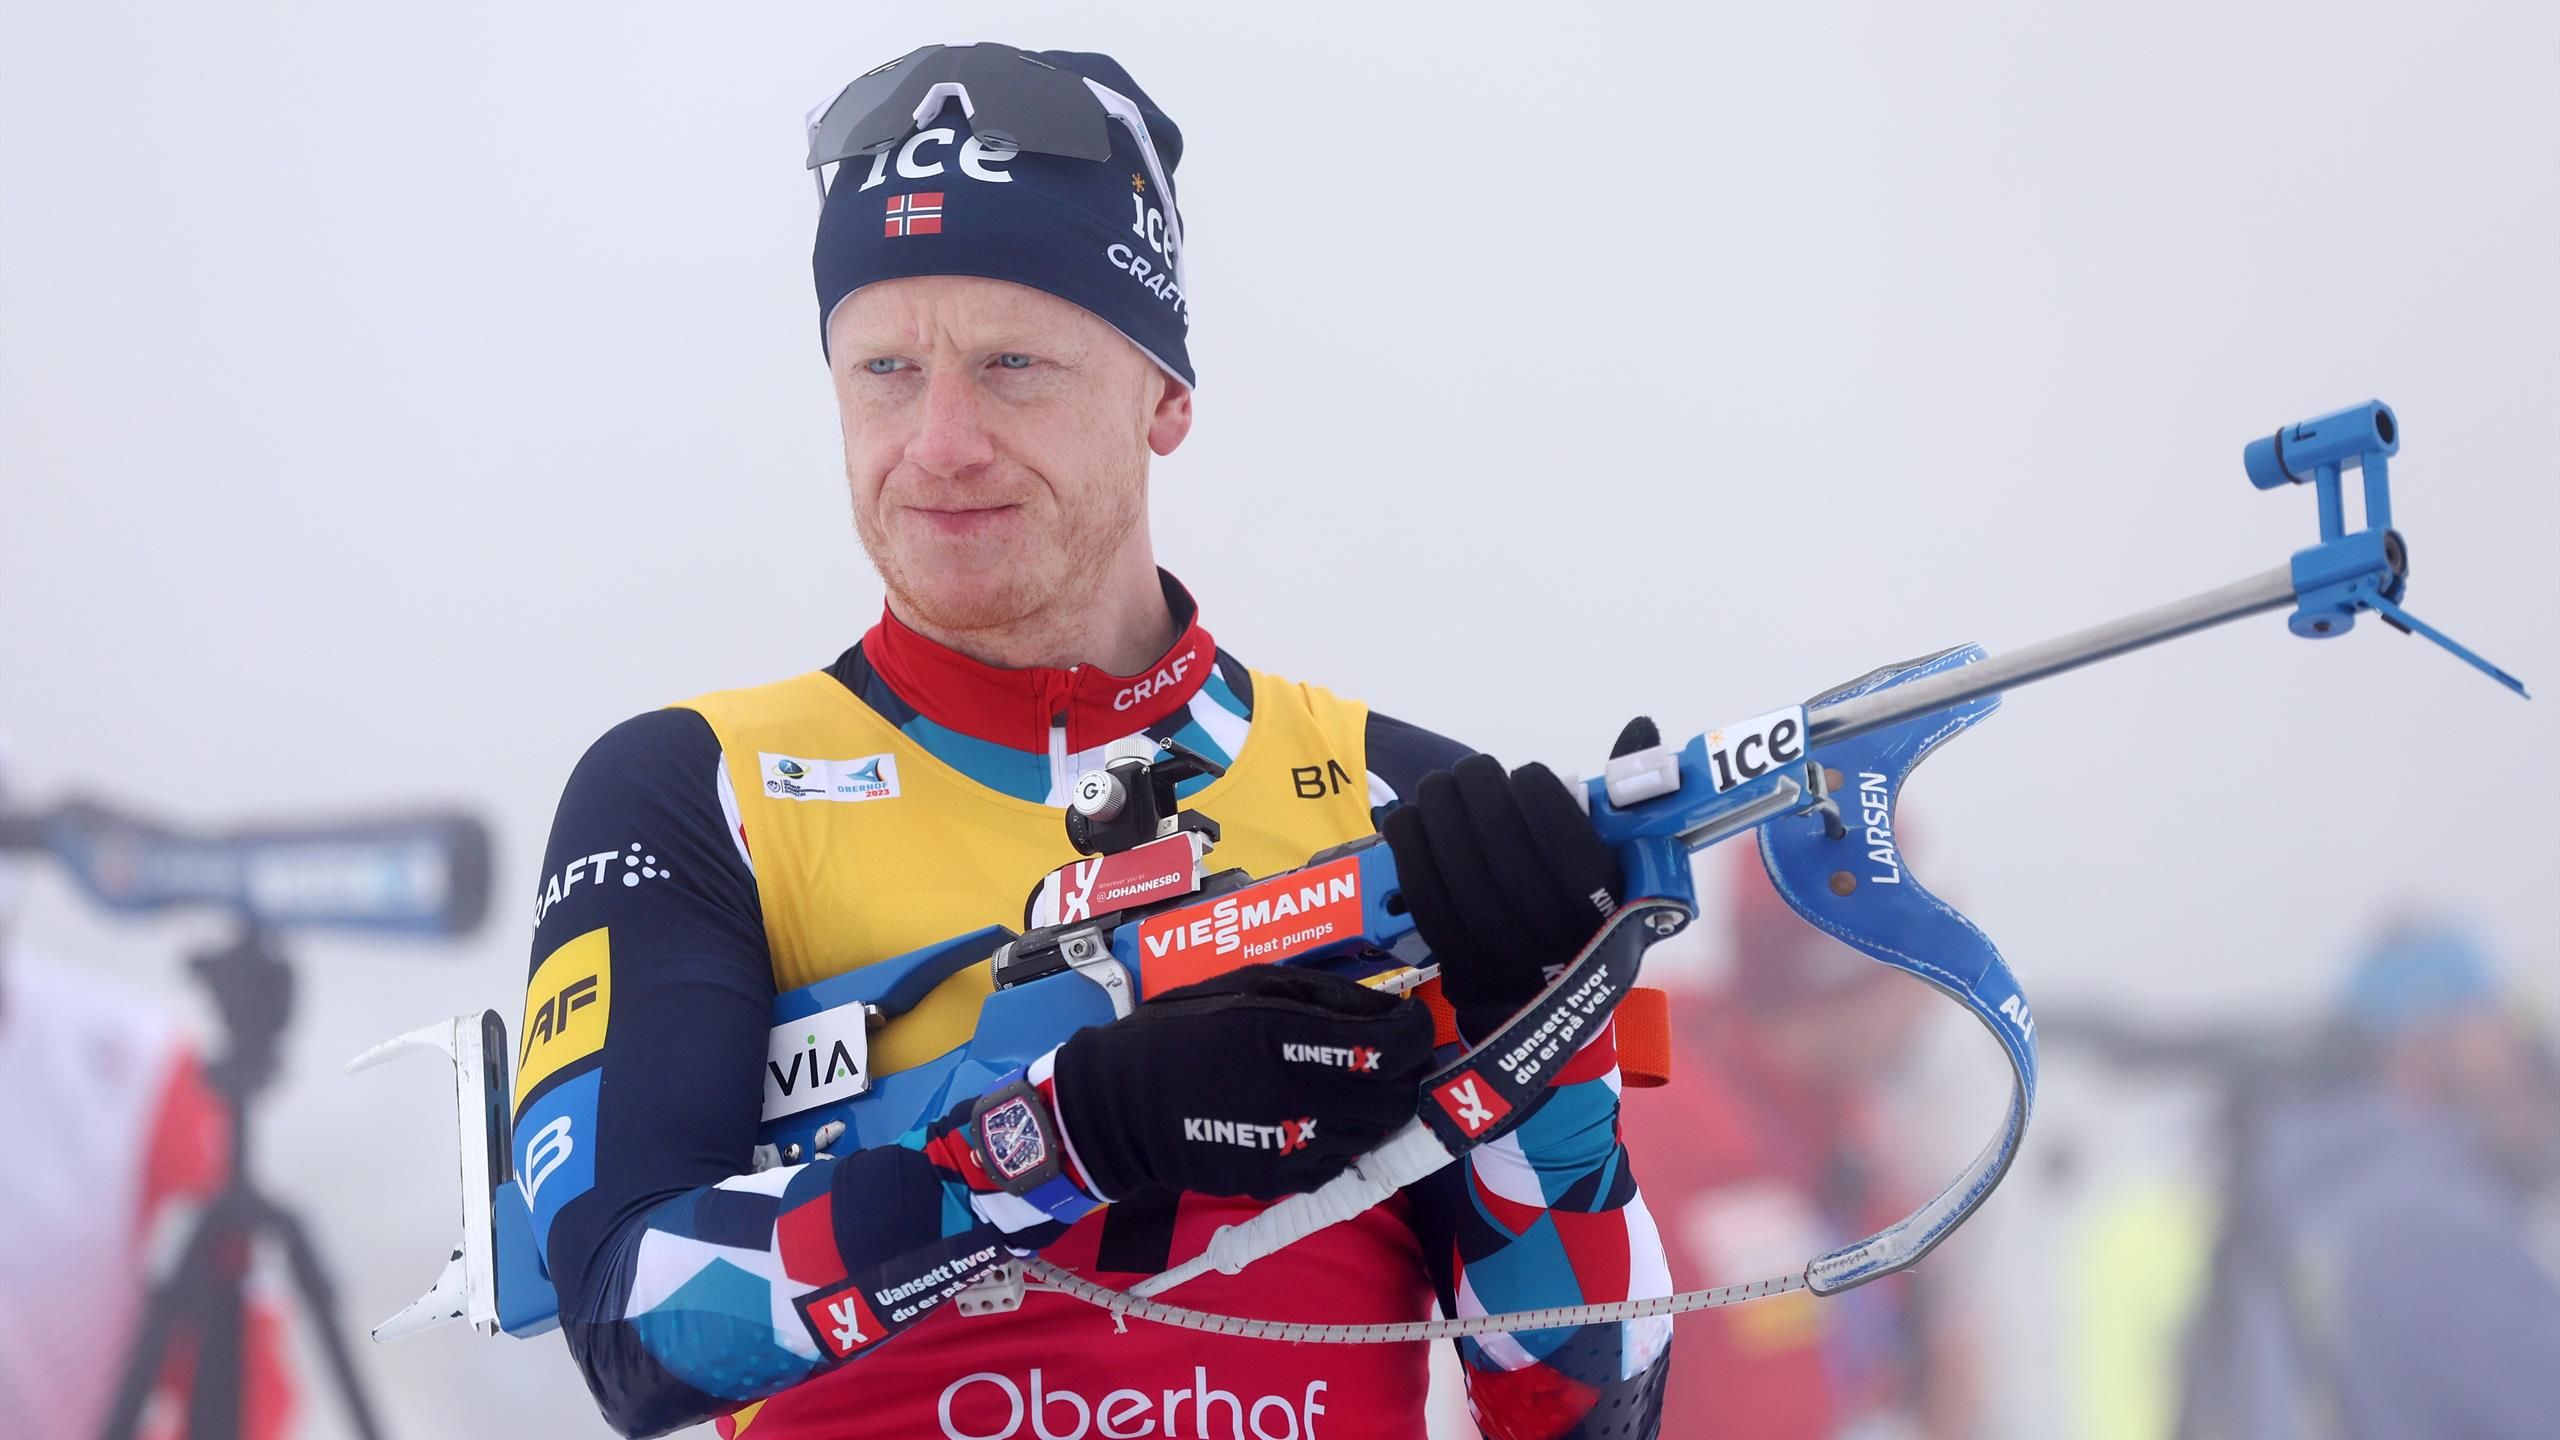 Johannes Bø earns biathlon record €477,000 in prize money in one season